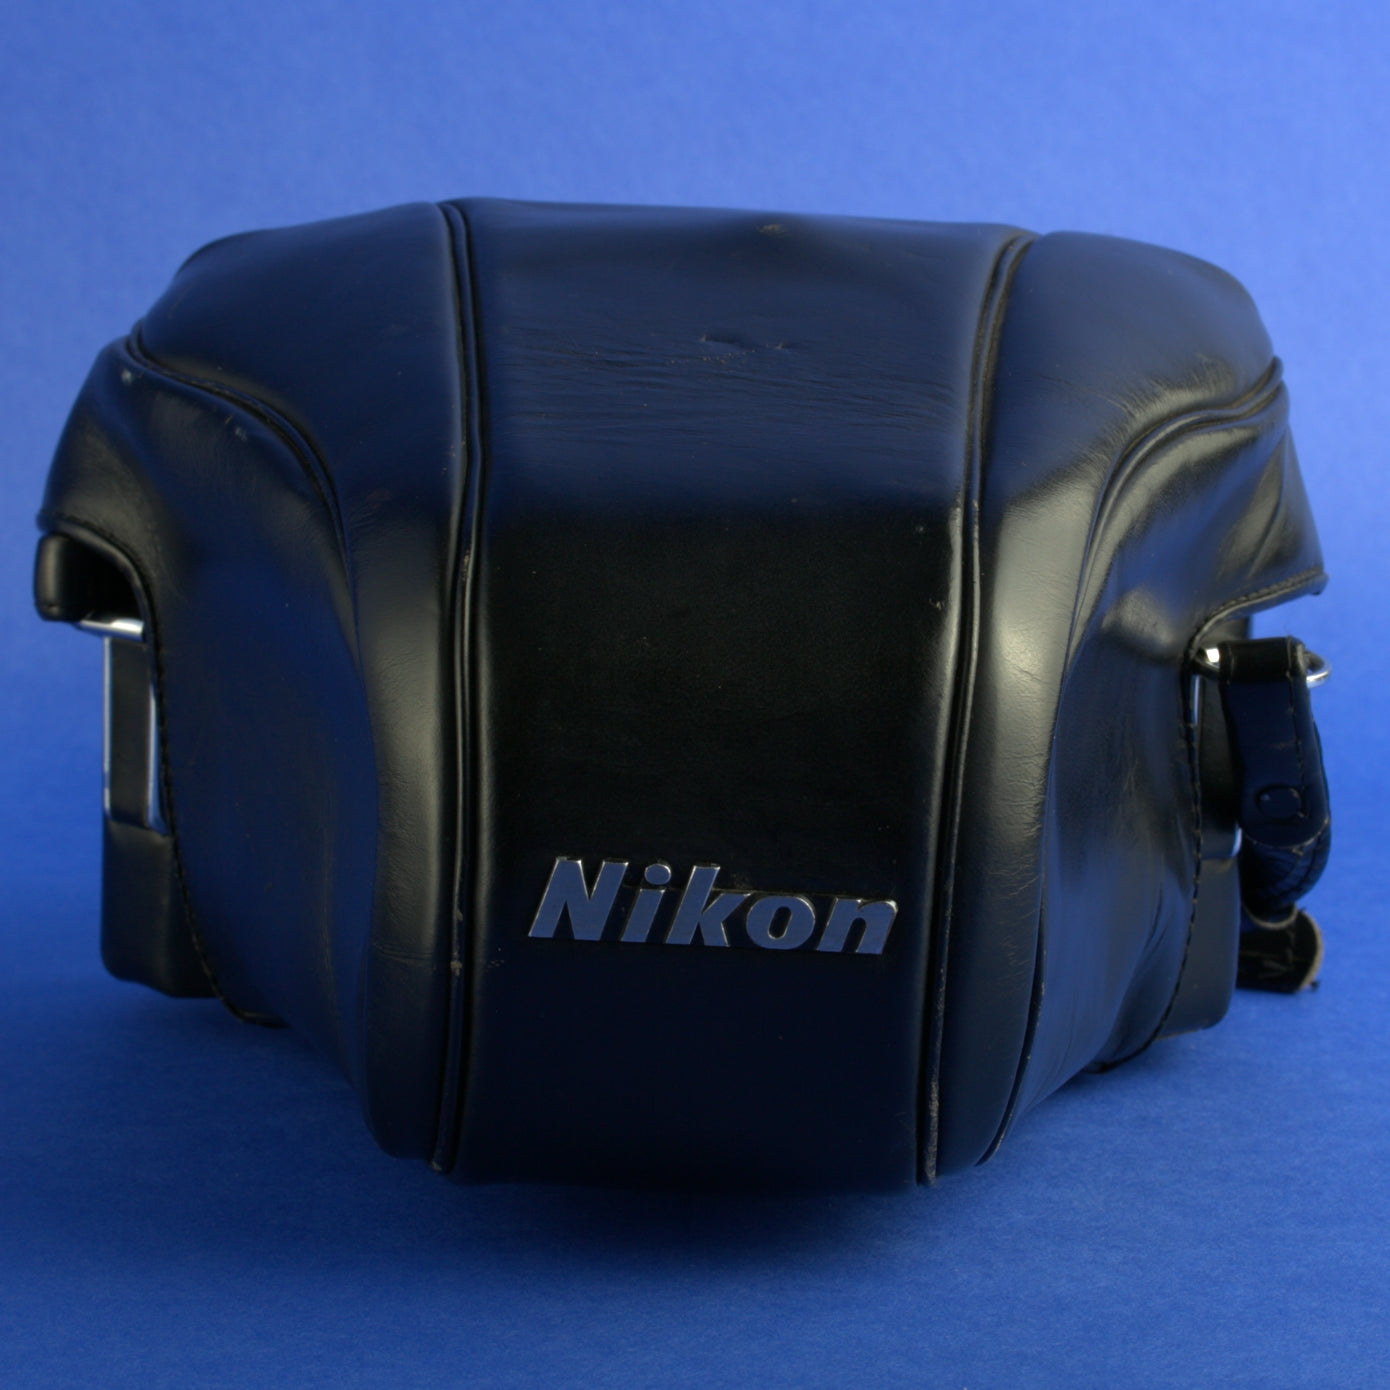 Black Nikon F Apollo Film Camera Body with Standard Prism